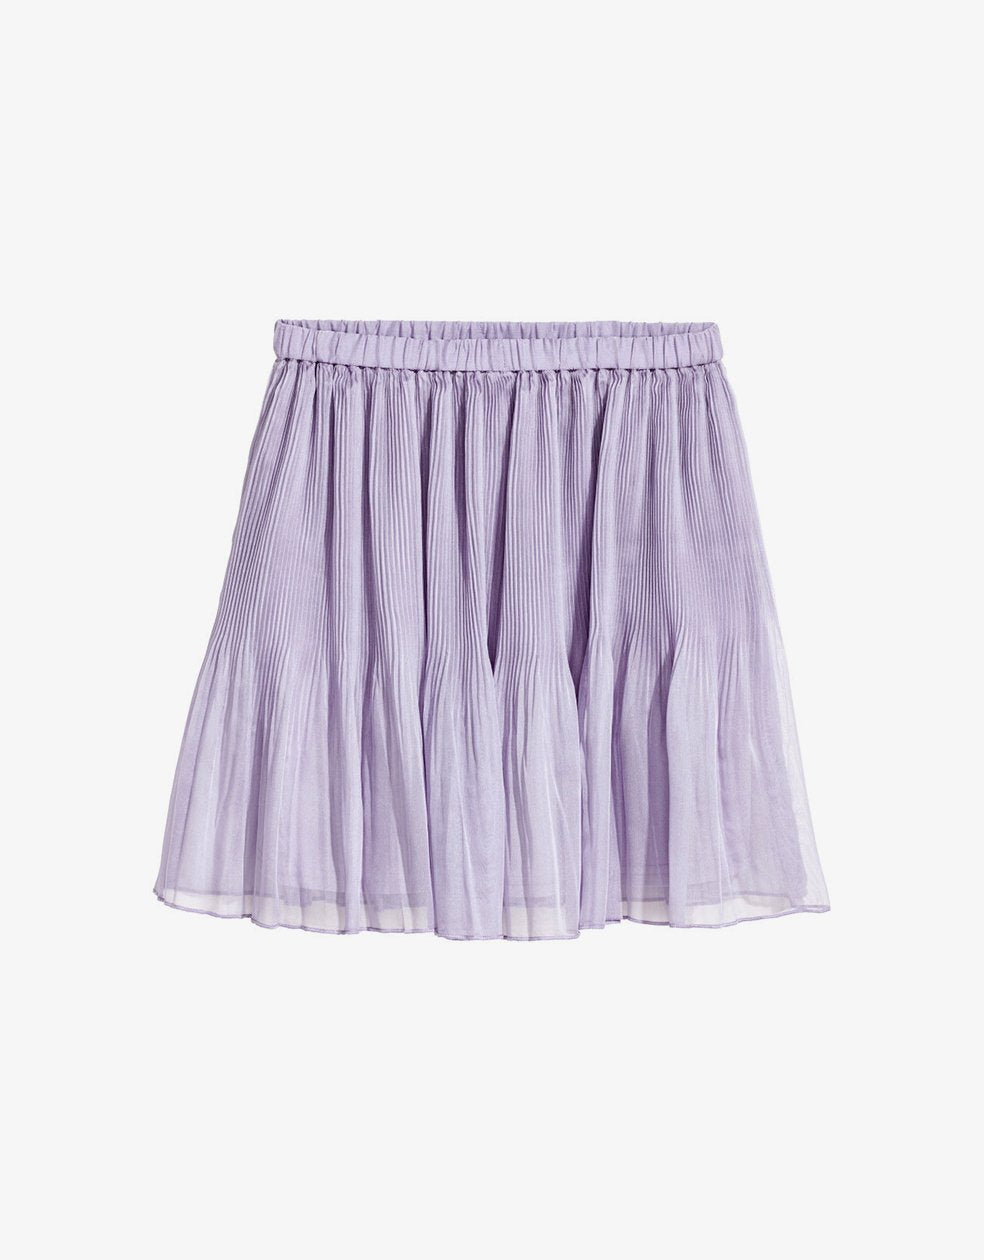 Short Mini Skirt